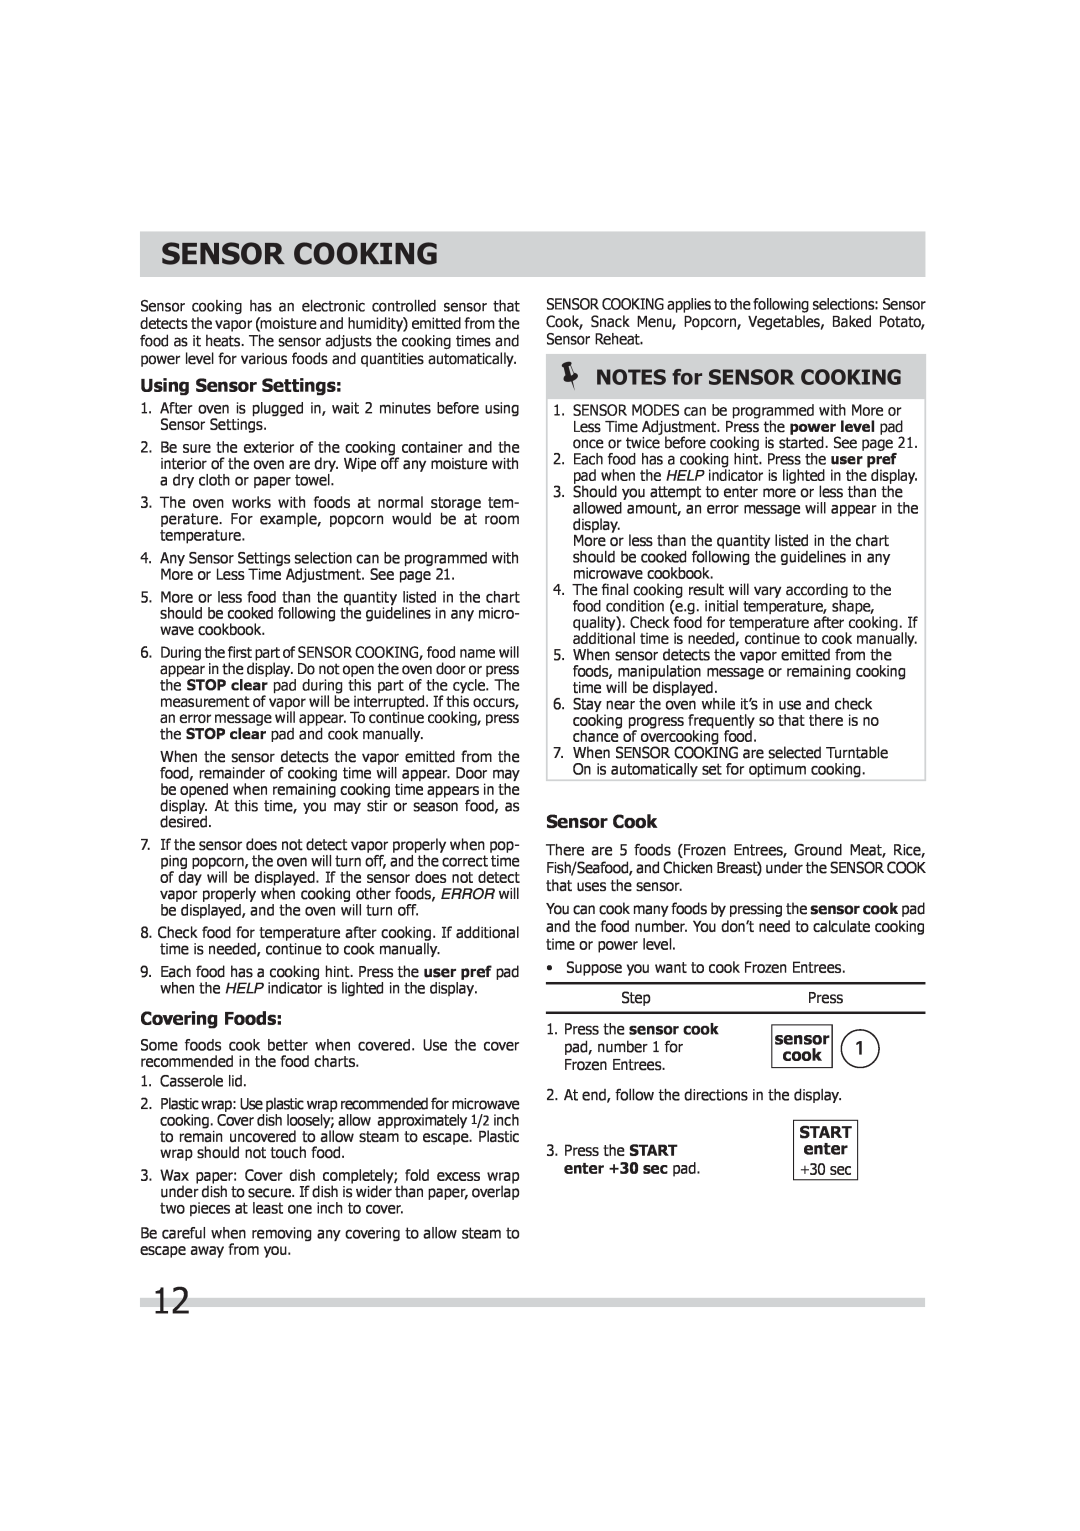 Frigidaire TINSEB299WRRZ-EL01 Sensor Cooking, NOTES for SENSOR COOKING, Using Sensor Settings, Covering Foods, cook, enter 